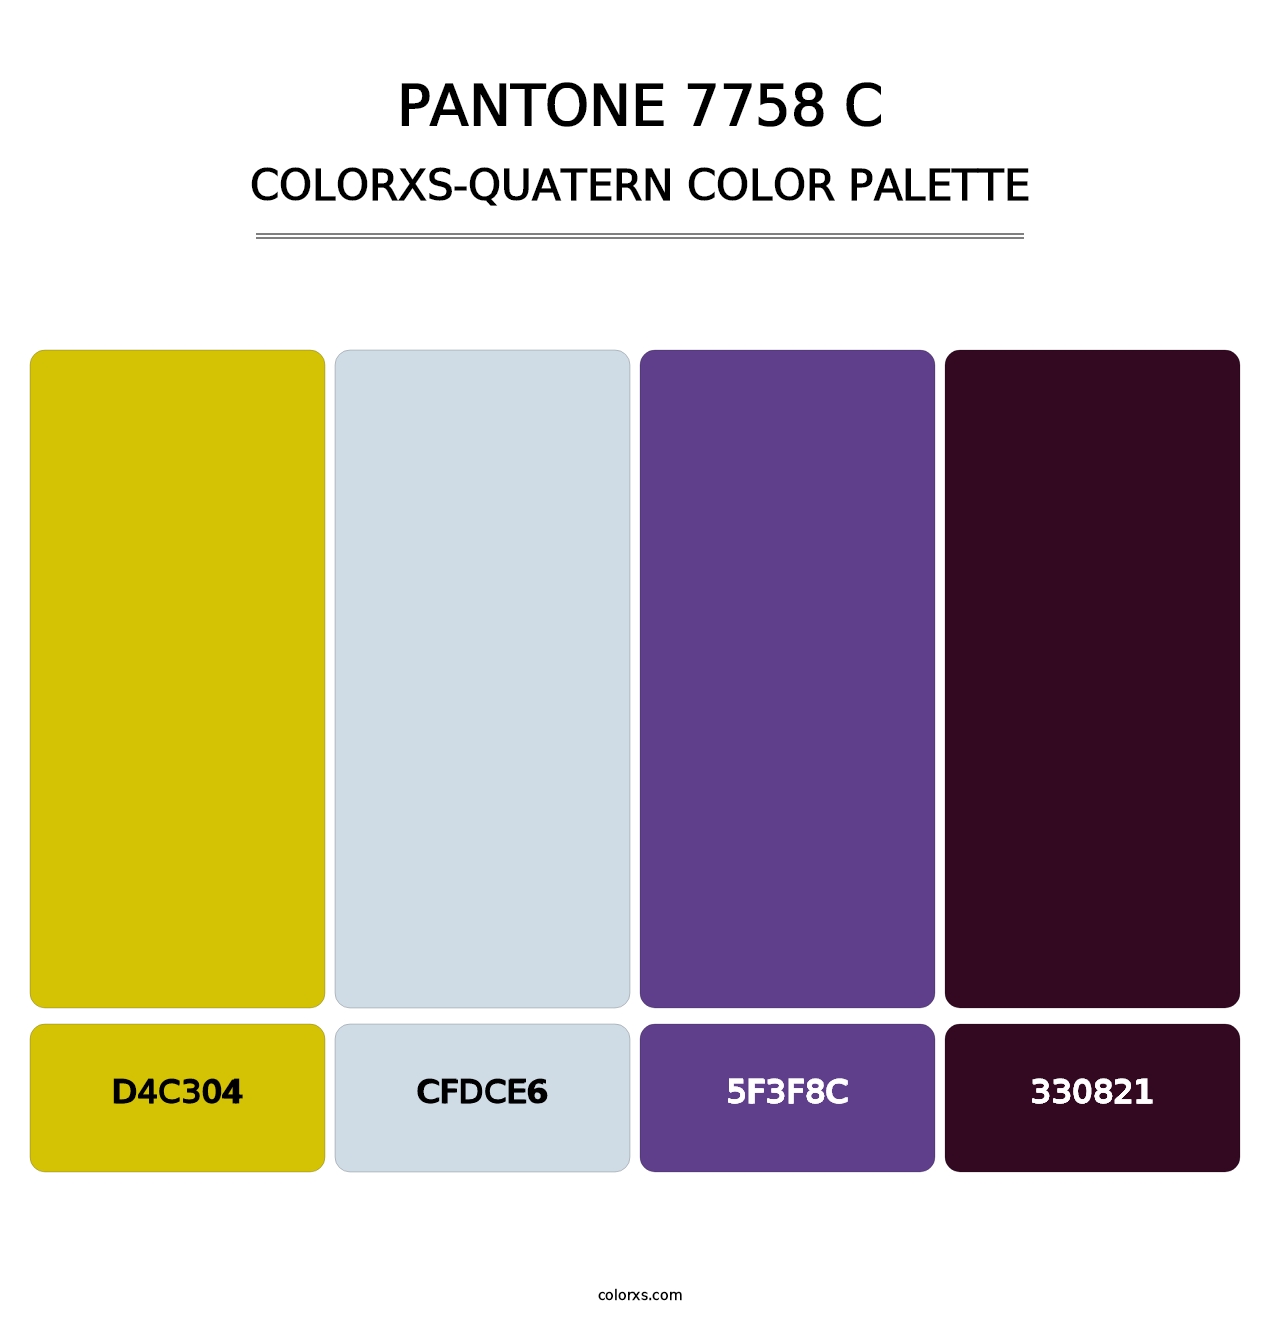 PANTONE 7758 C - Colorxs Quatern Palette